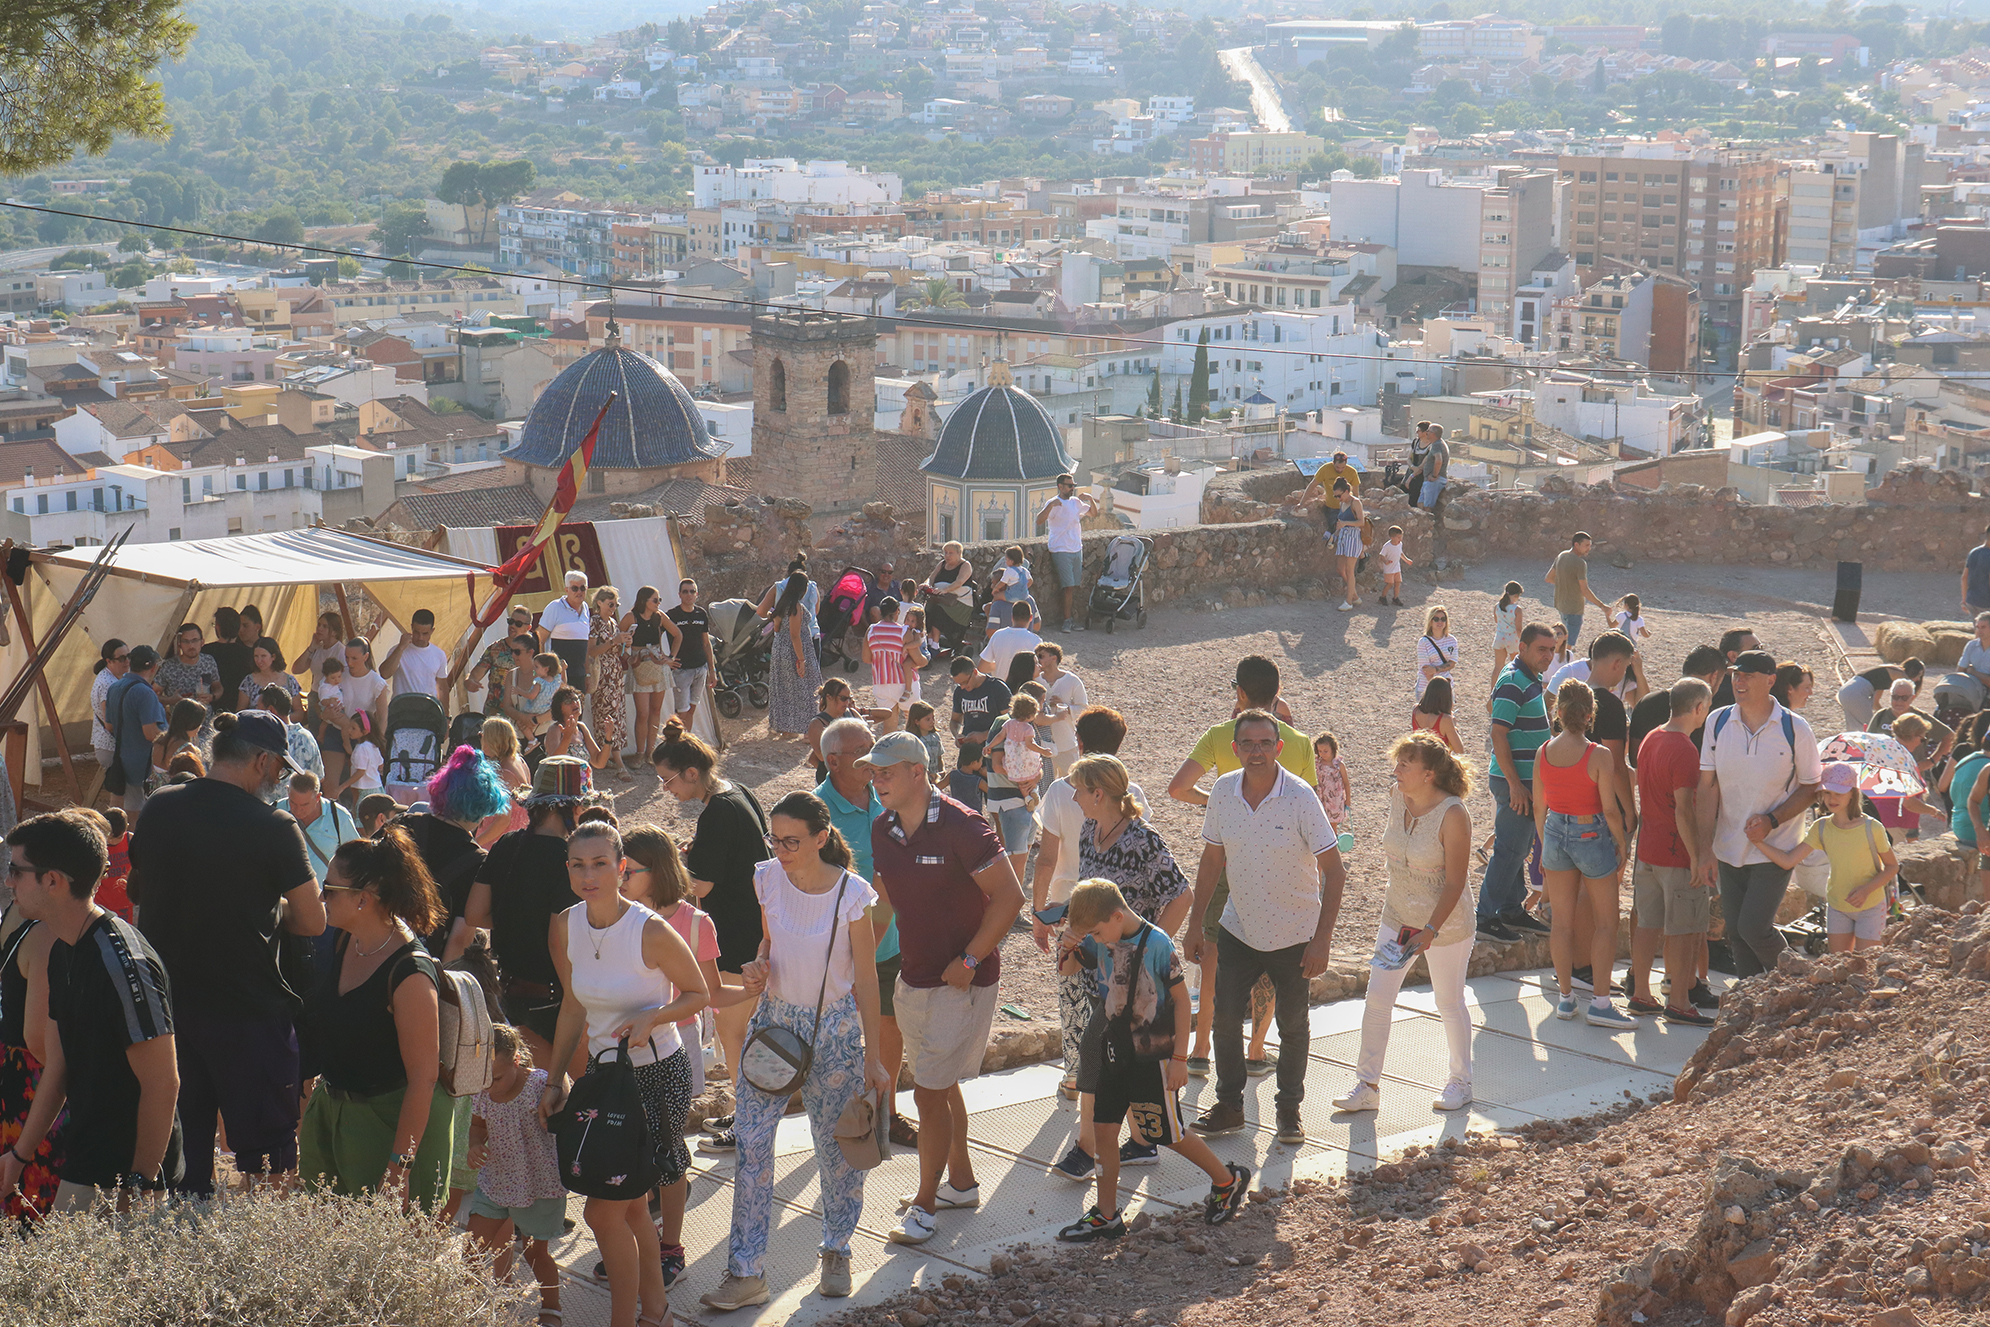 Onda atrau prop de 45.000 turistes en 2023 amb el Castell de  les 300 Torres com a protagonista